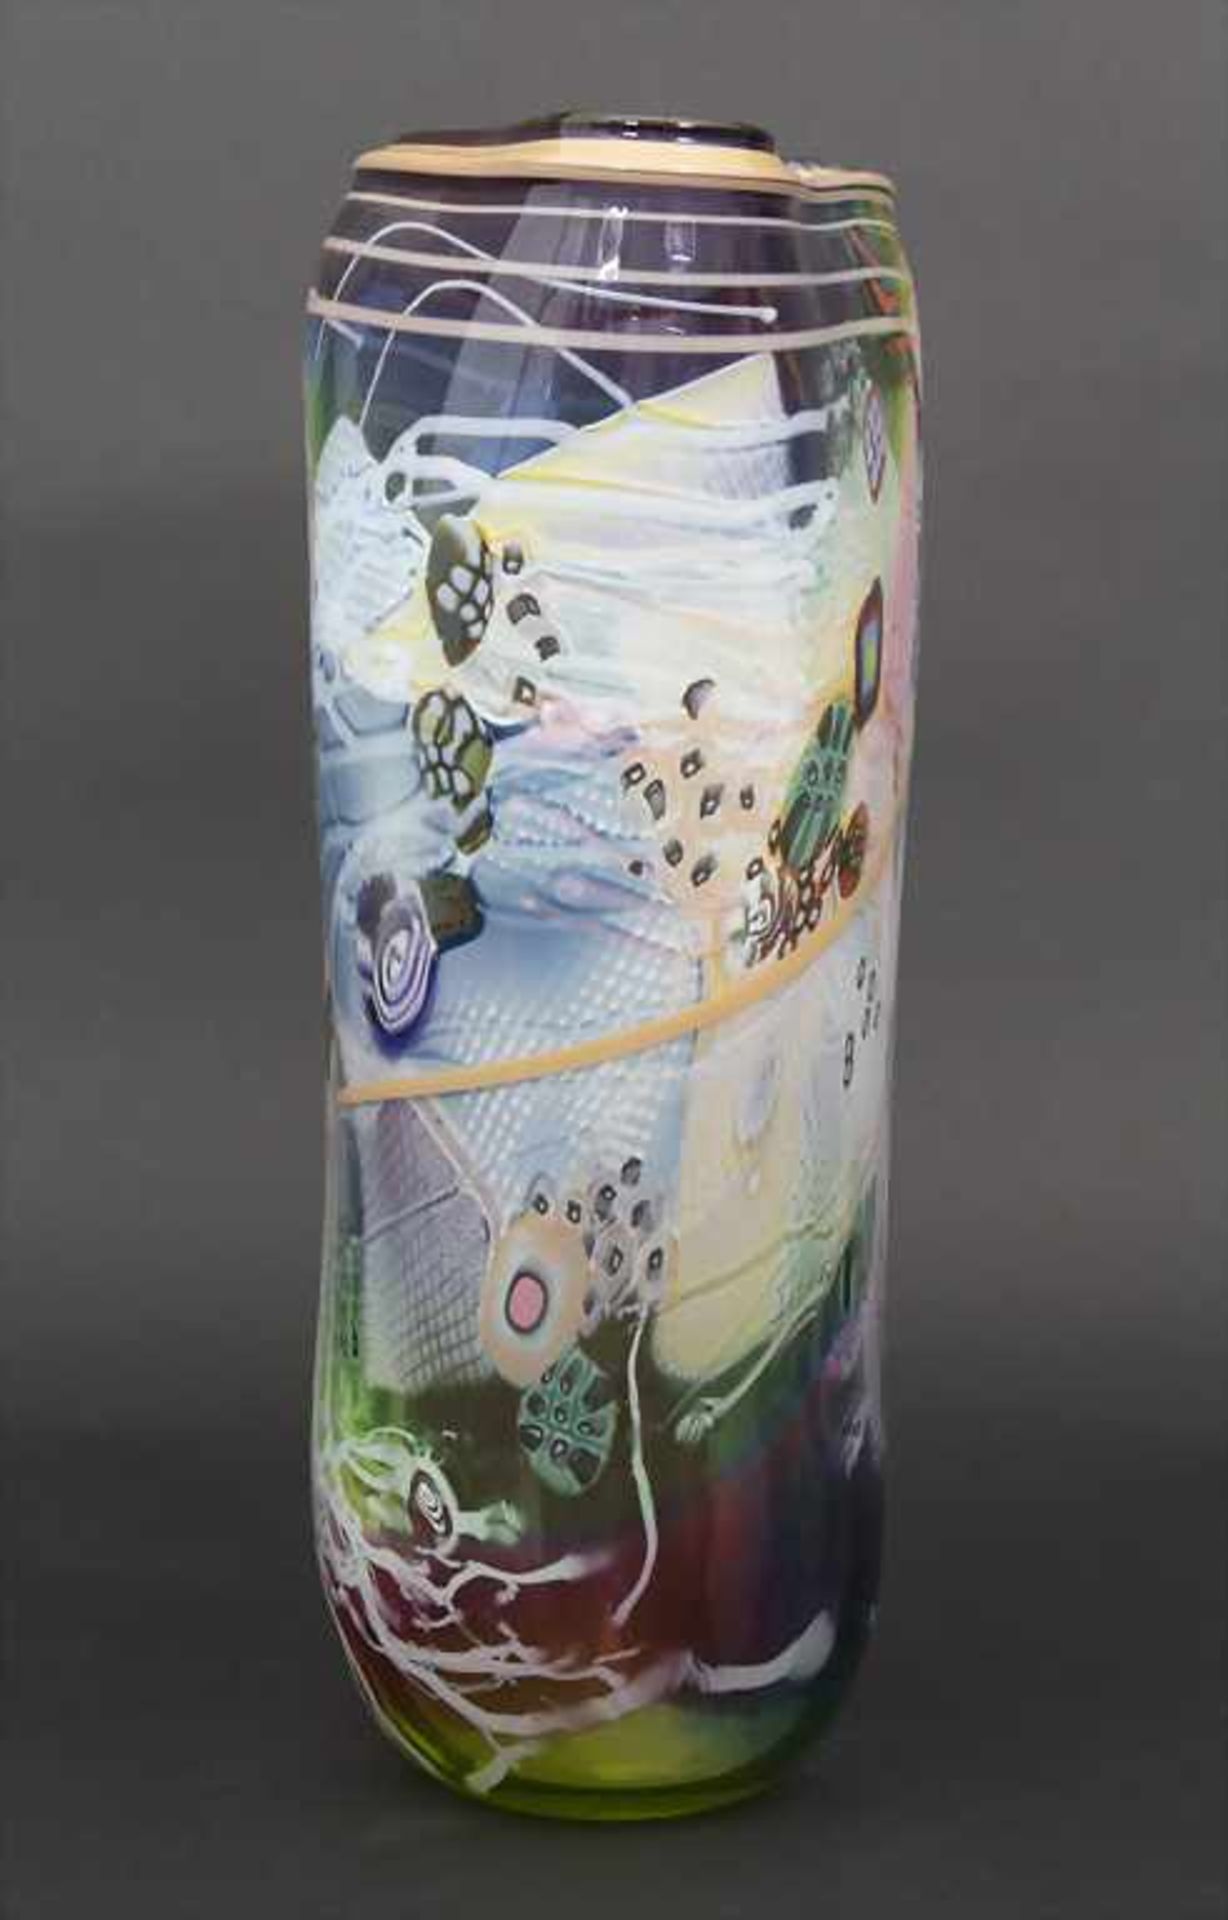 Designer-Glasvase / A design glass vase, Wes Hunting, Wisconsin, um 1980 - Image 4 of 7